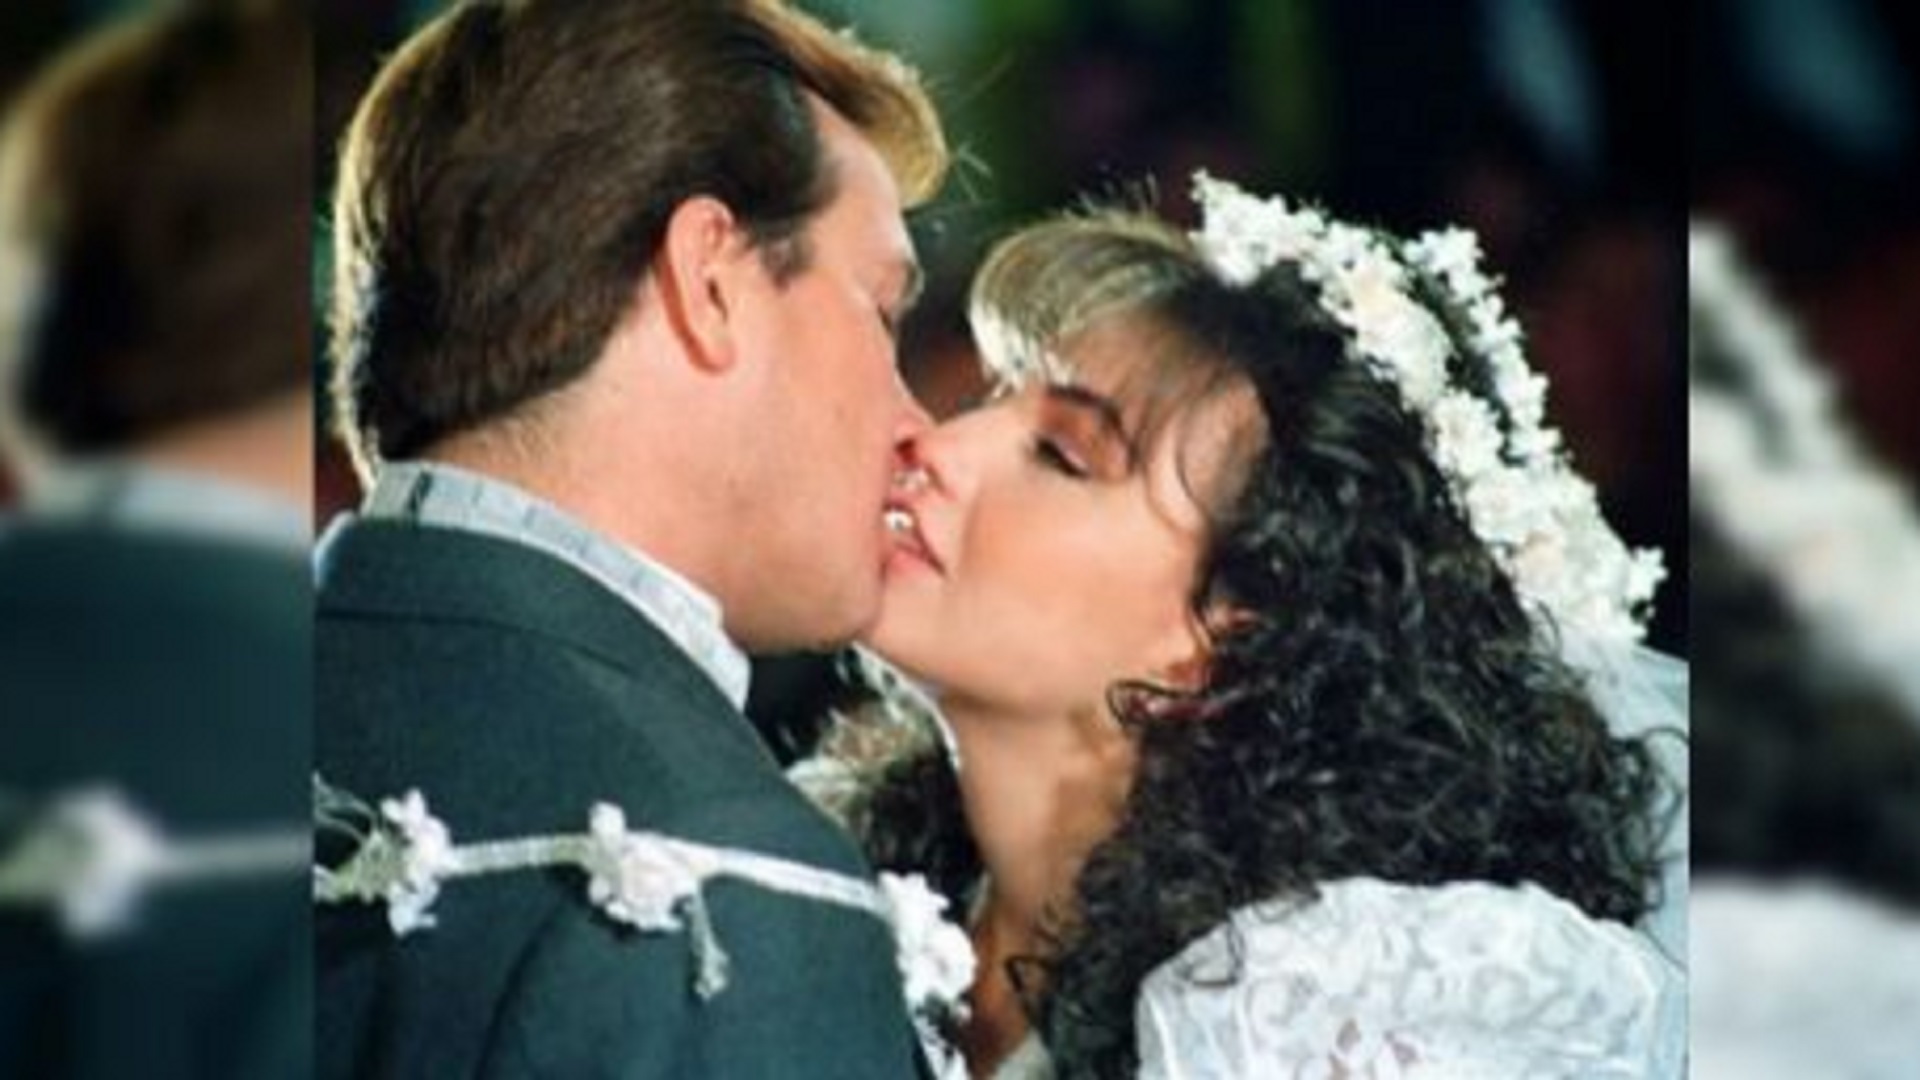 Arturo Peniche y Thalia en una escena "picante" de María Mercedes